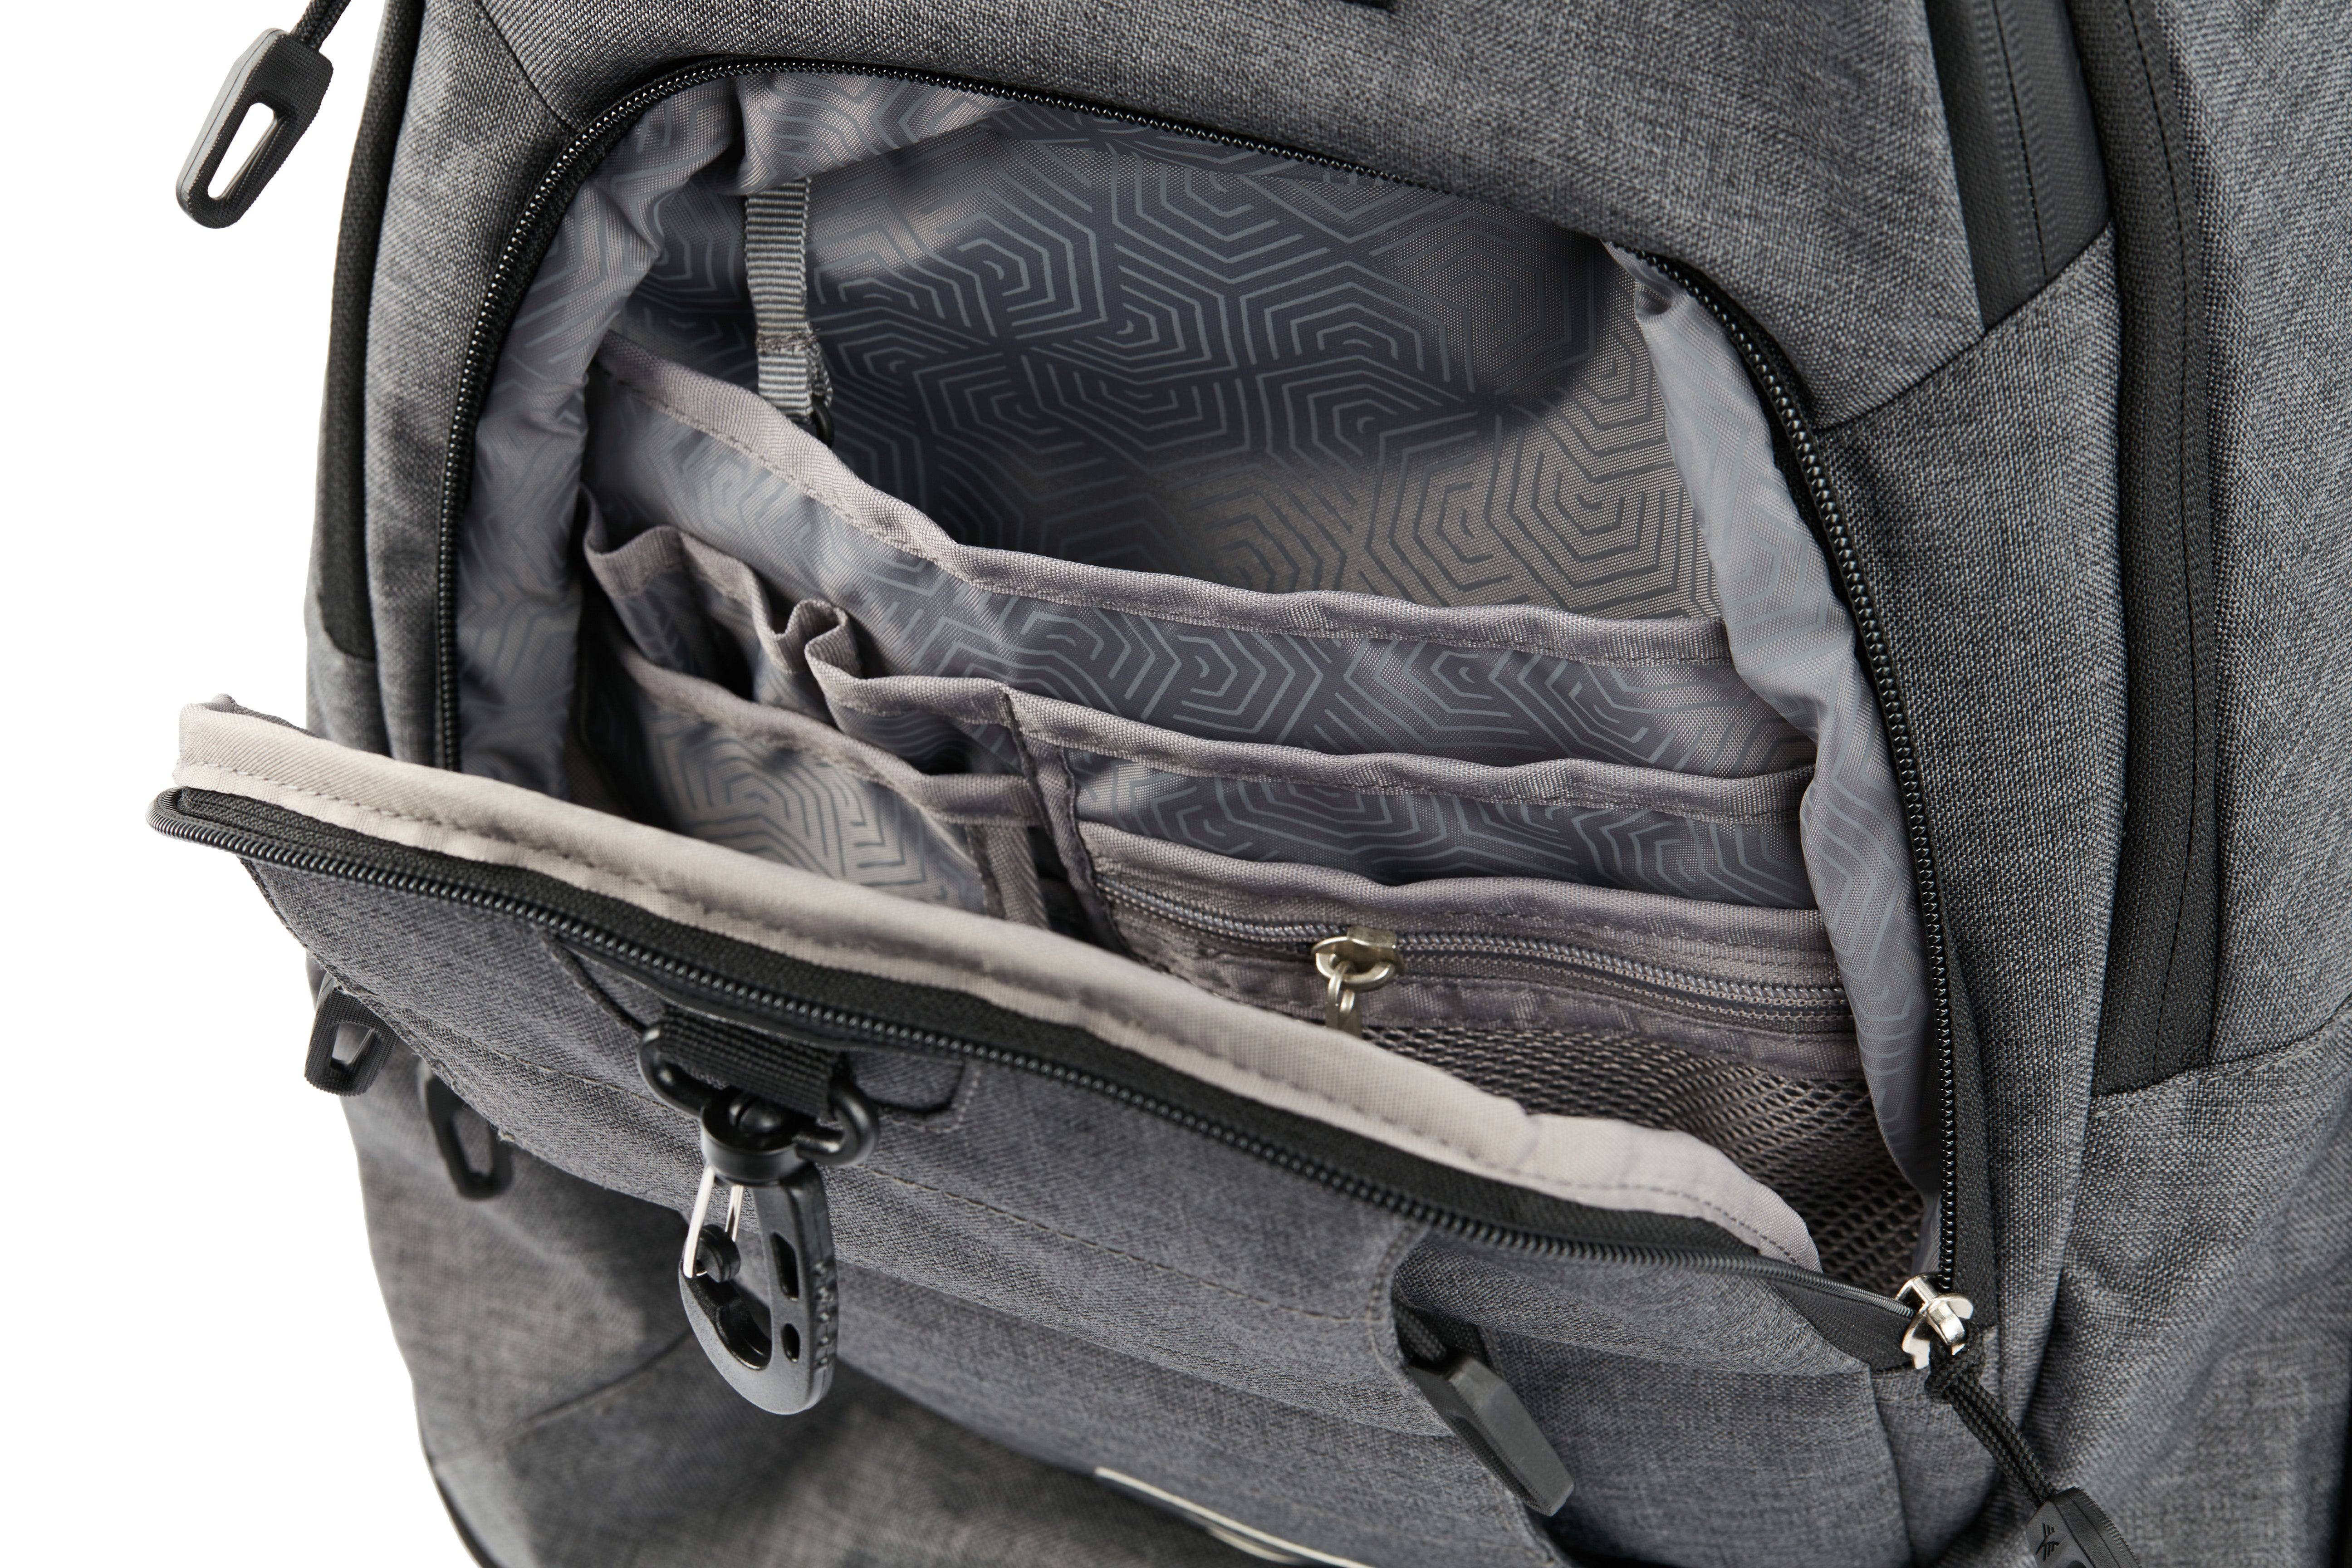 High Sierra - Jarvis Pro backpack on wheels - Black-13